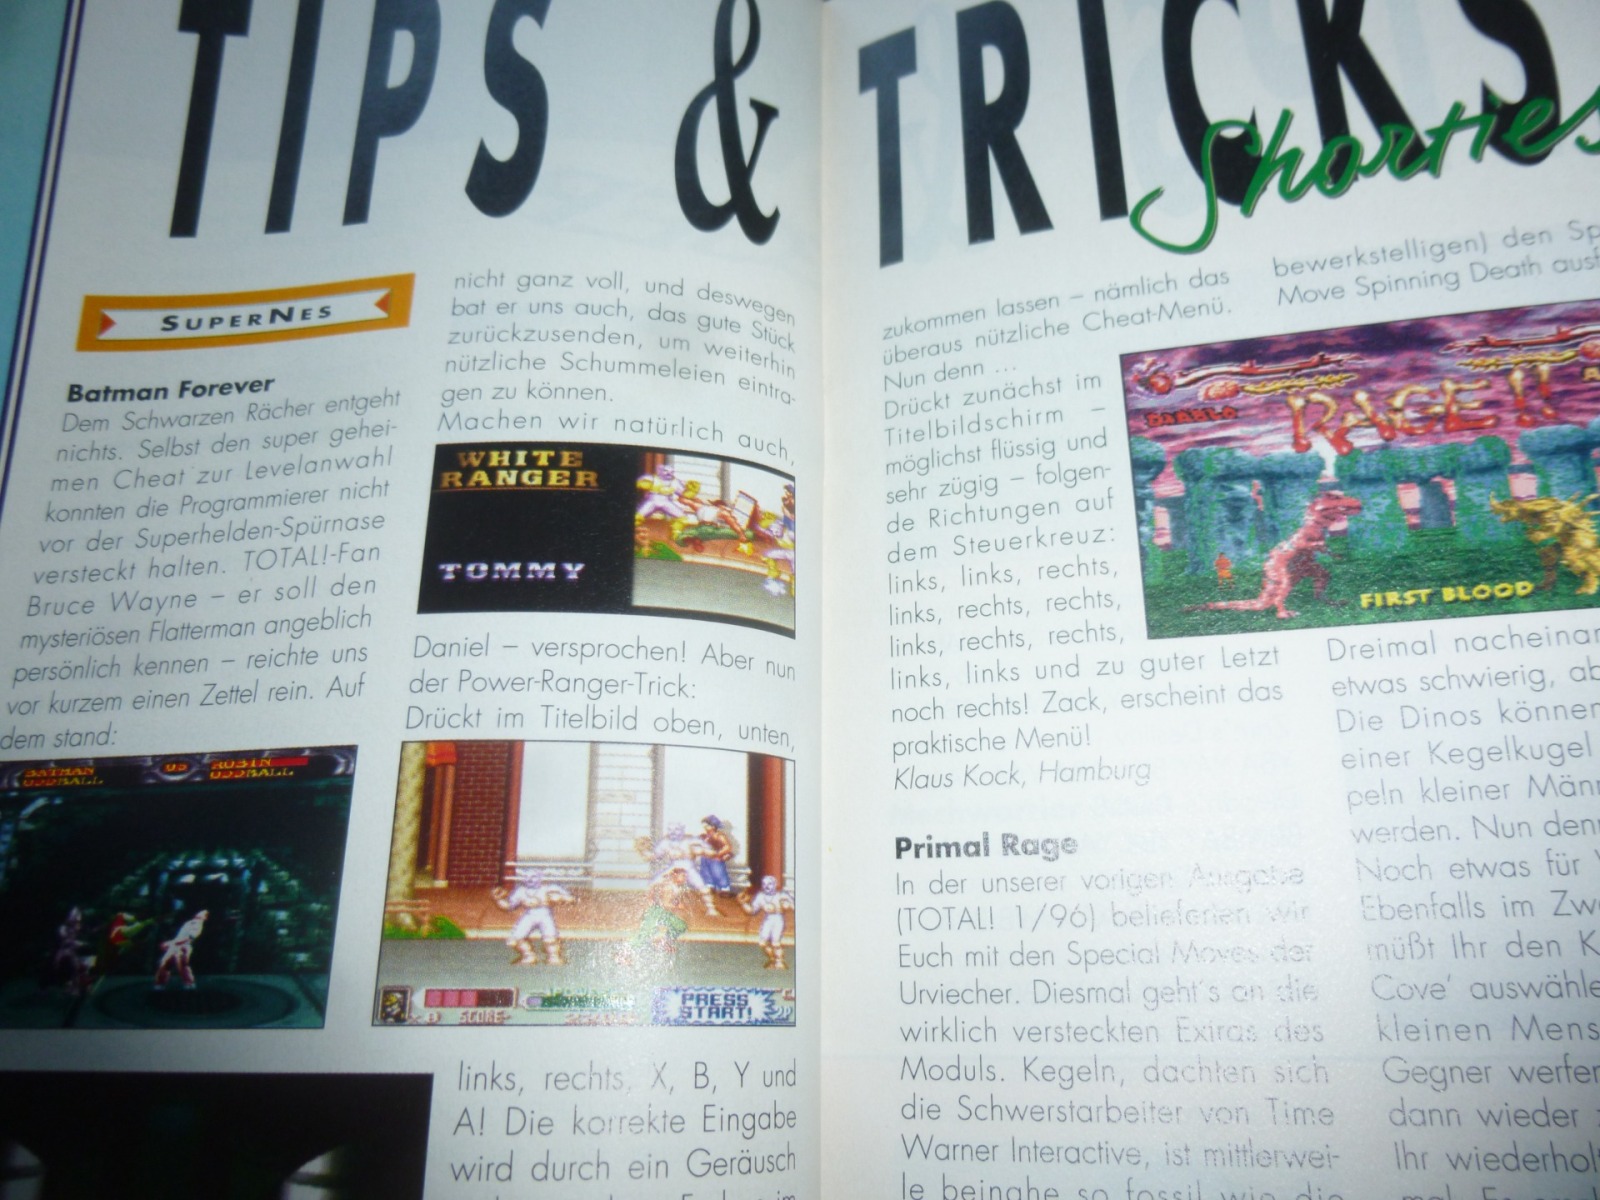 TOTAL Das unabhängige Magazin - 100% Nintendo - Ausgabe 2/96 1996 22